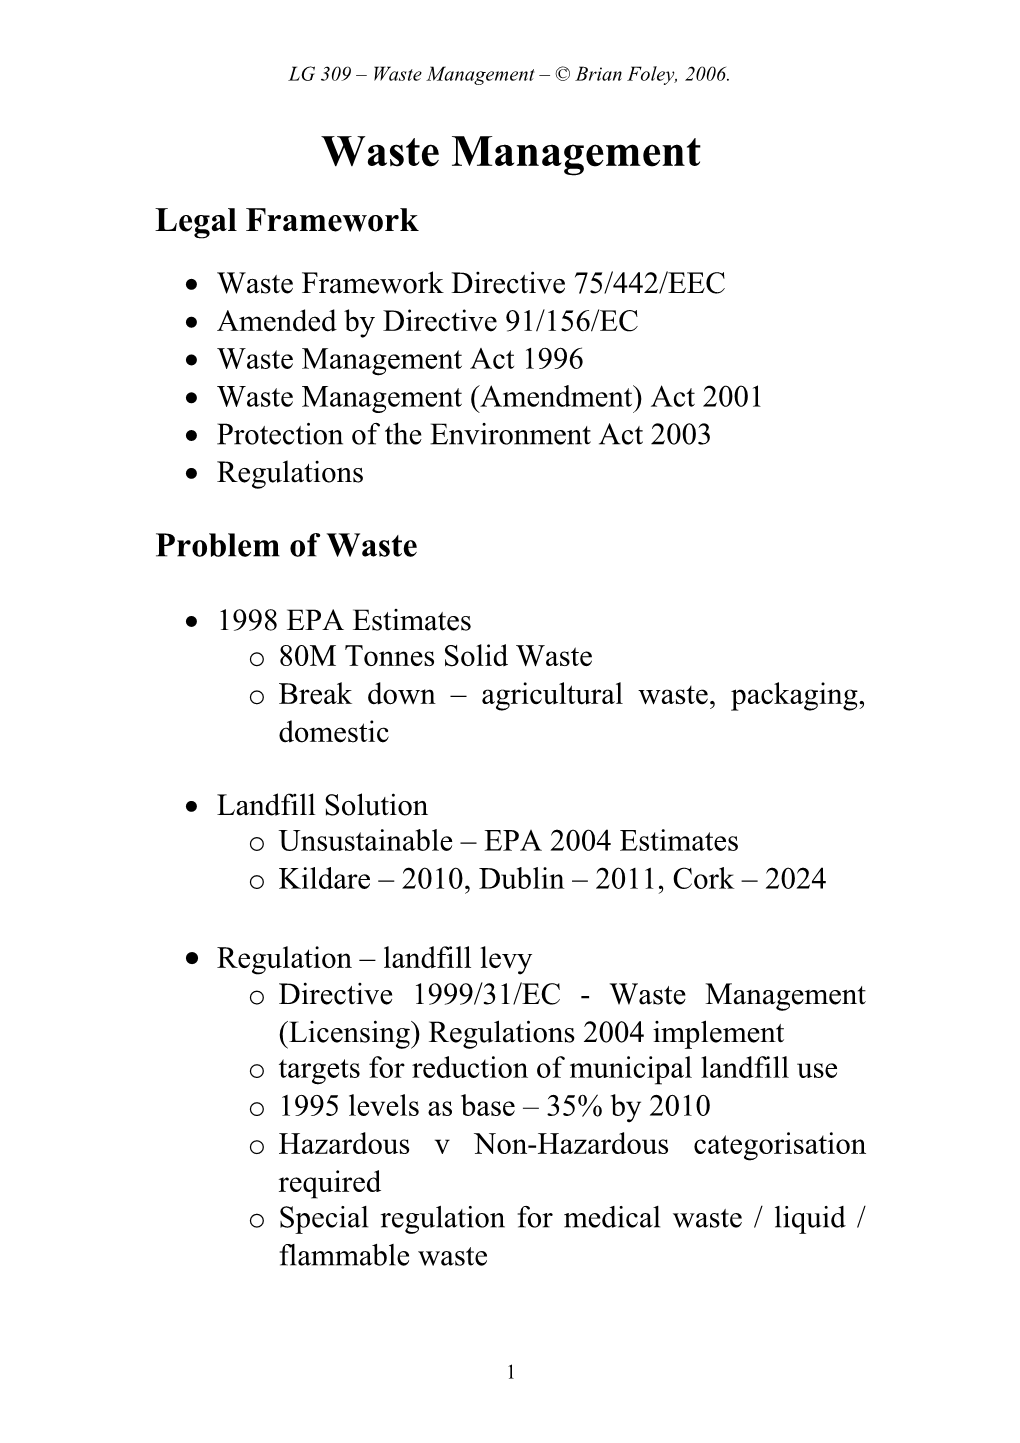 LG 309 Waste Management Brian Foley, 2006